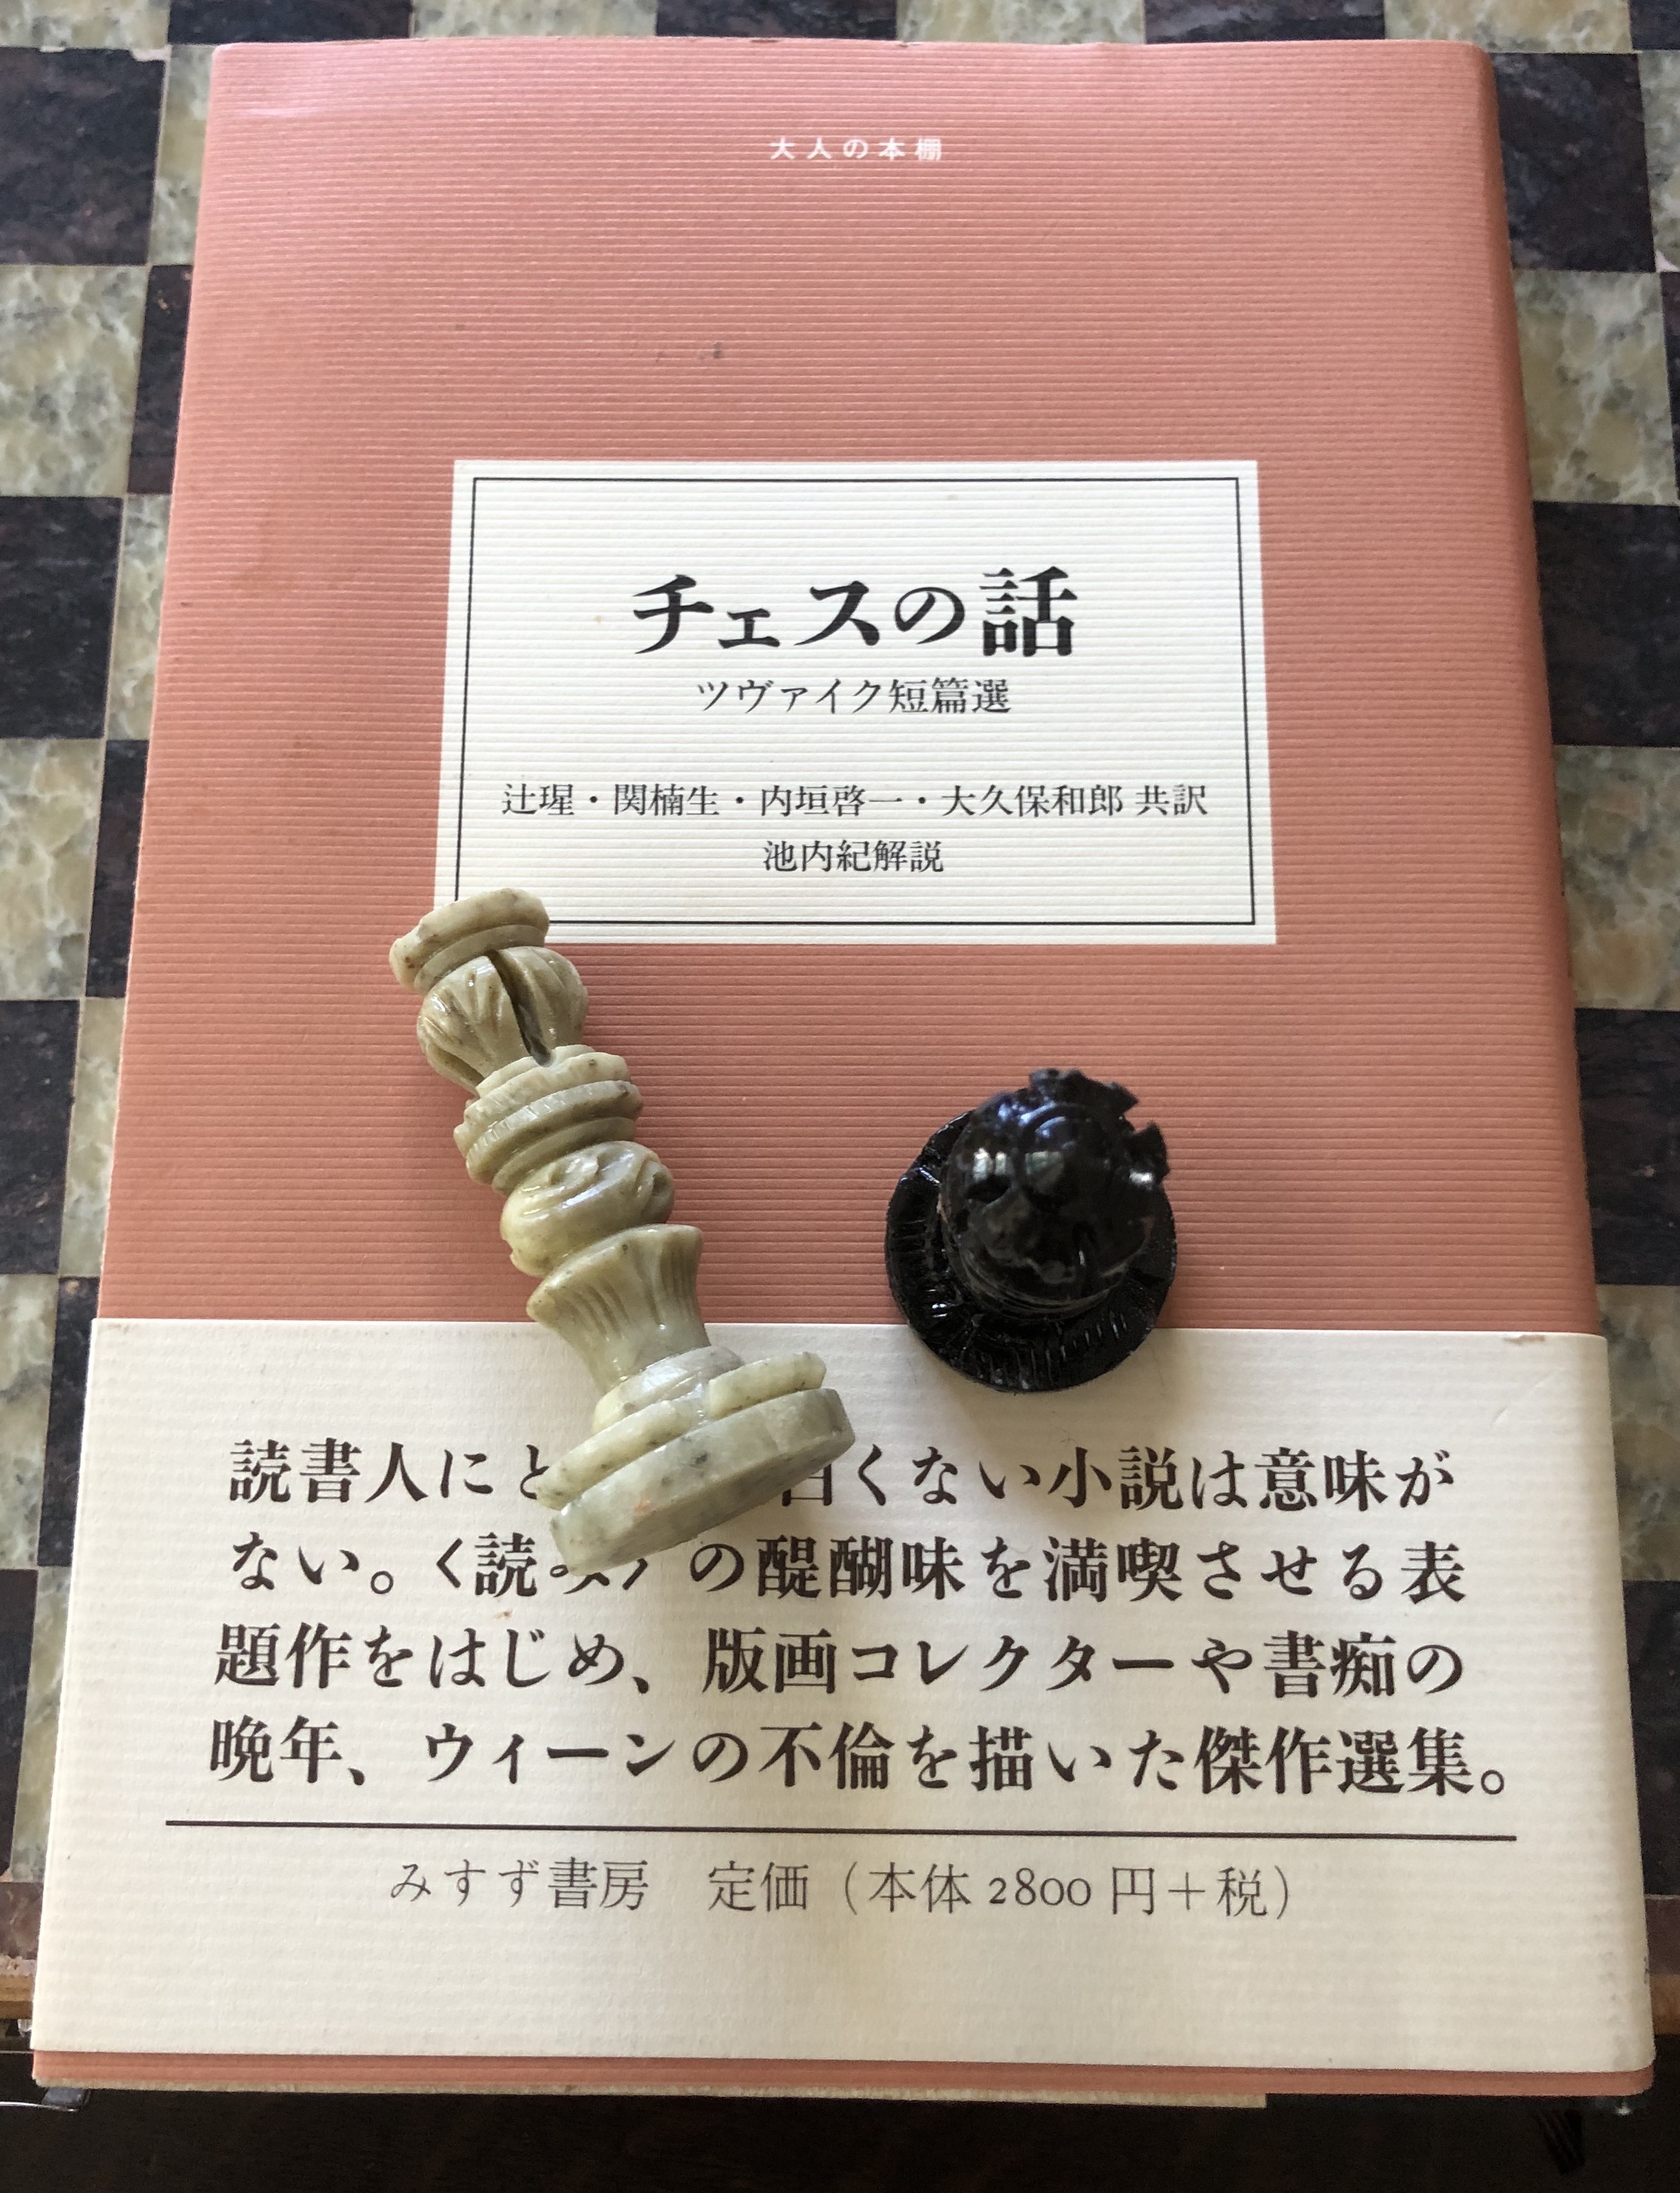 小説にみるチェス(横谷 慈) | 紳士が知るべきチェスのダンディズム | 紳士のたしなみ | 男子専科